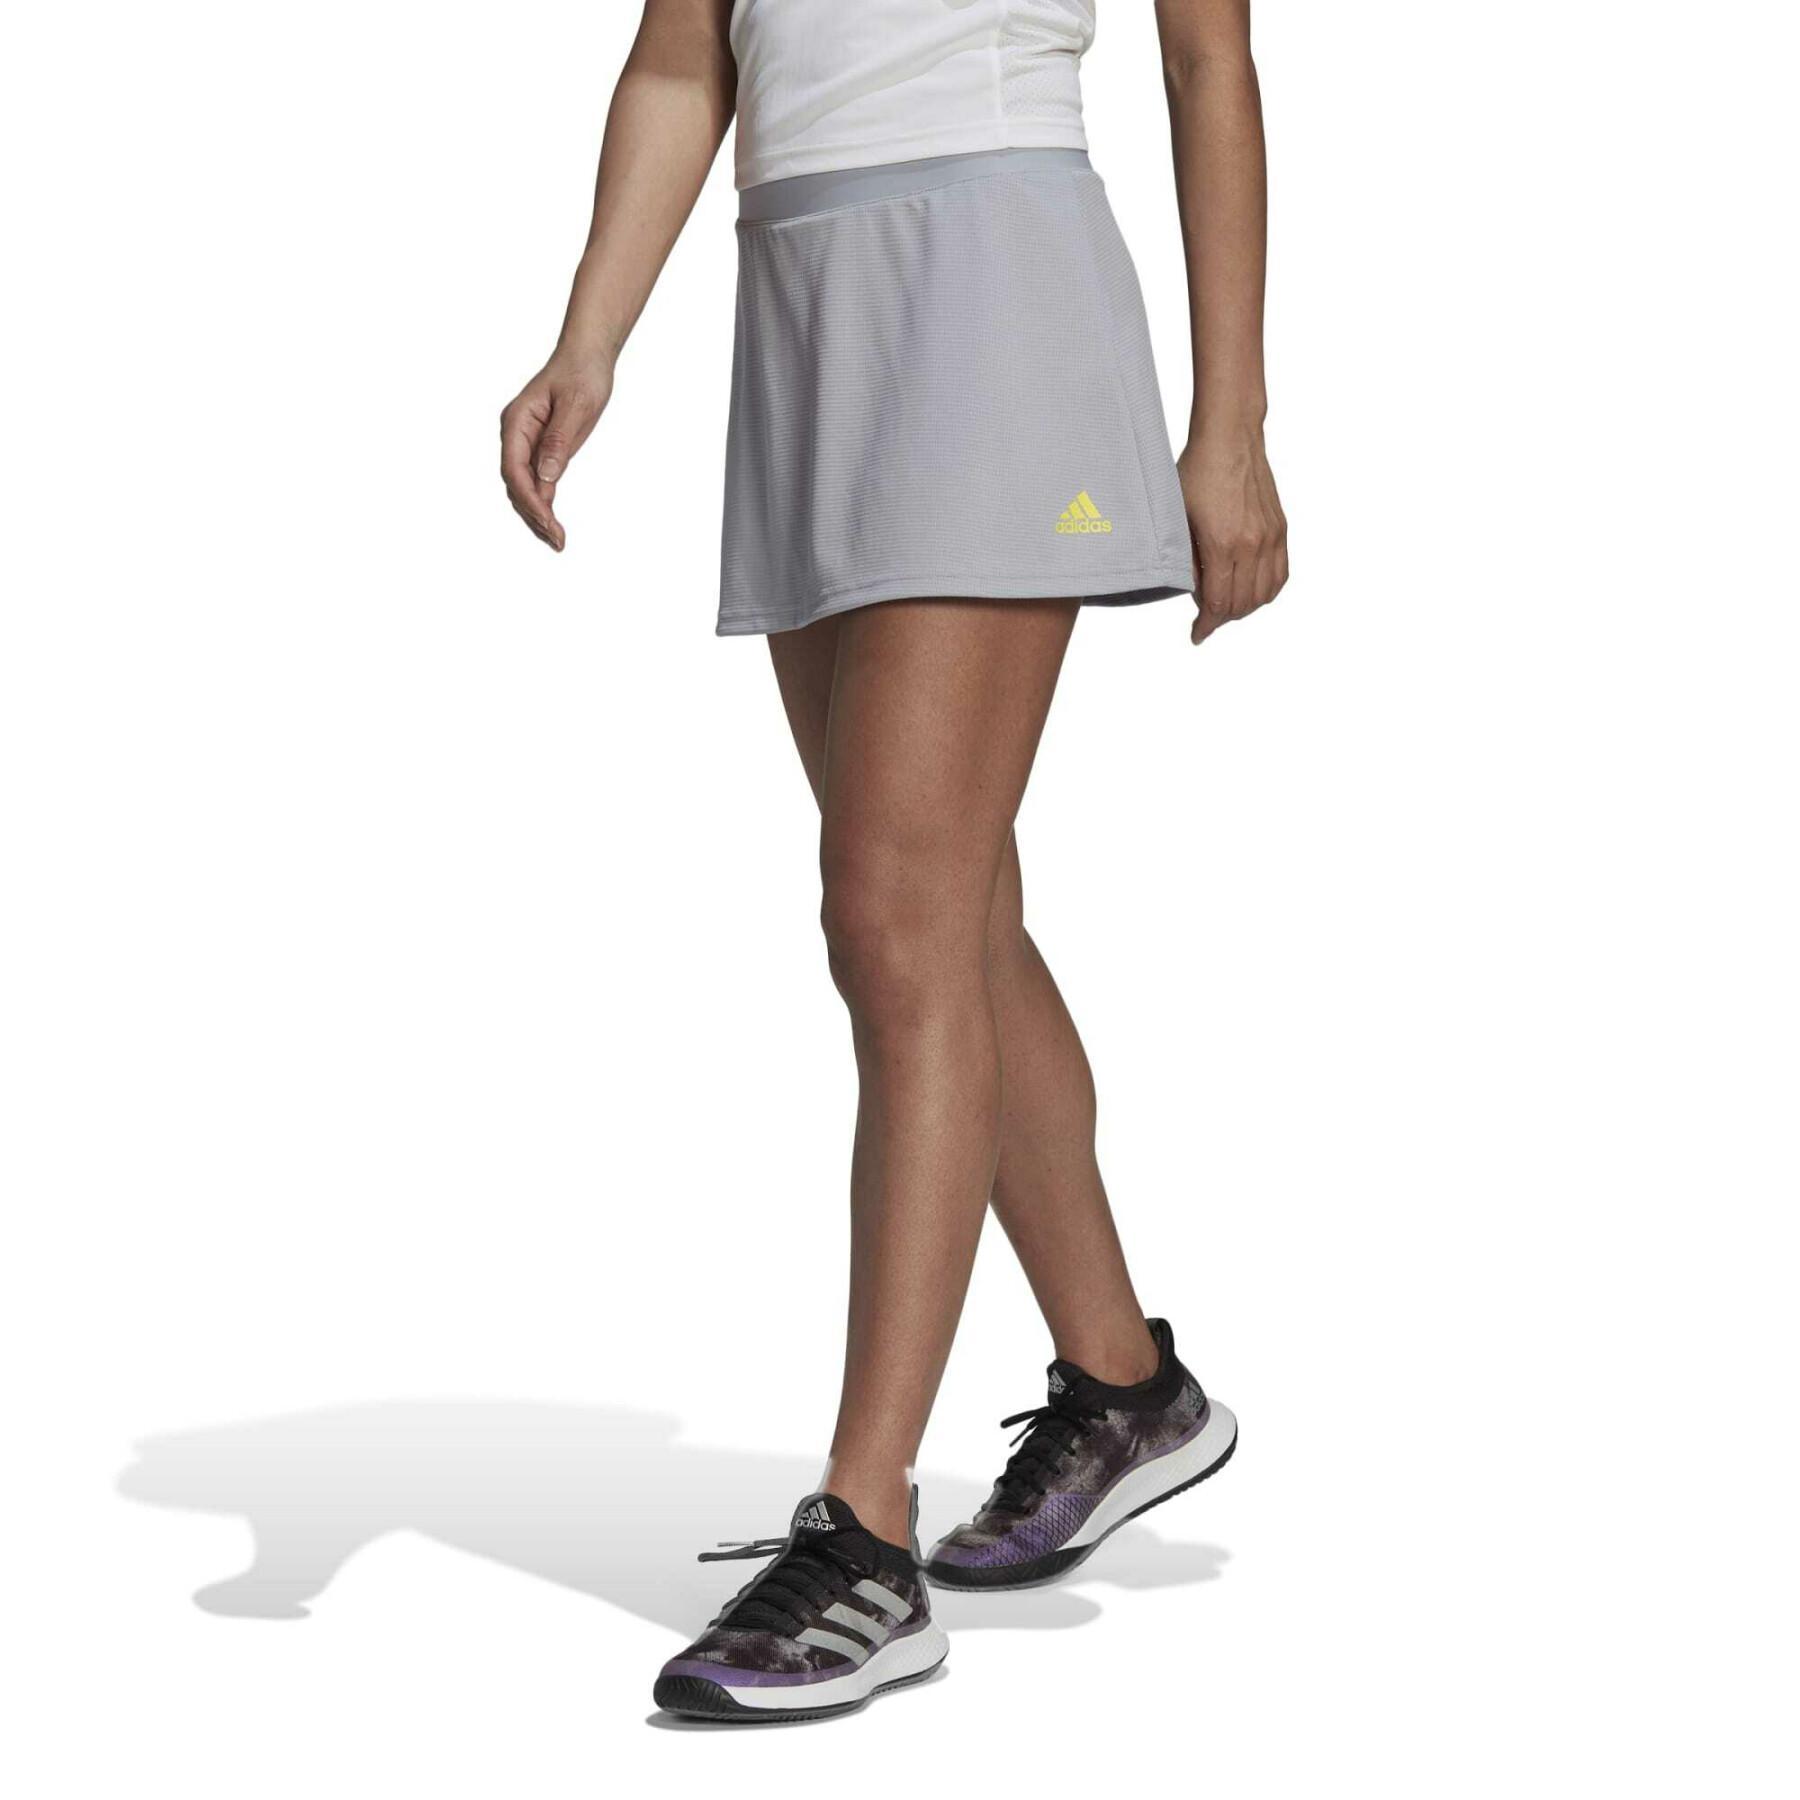 Falda del club de tenis femenino adidas